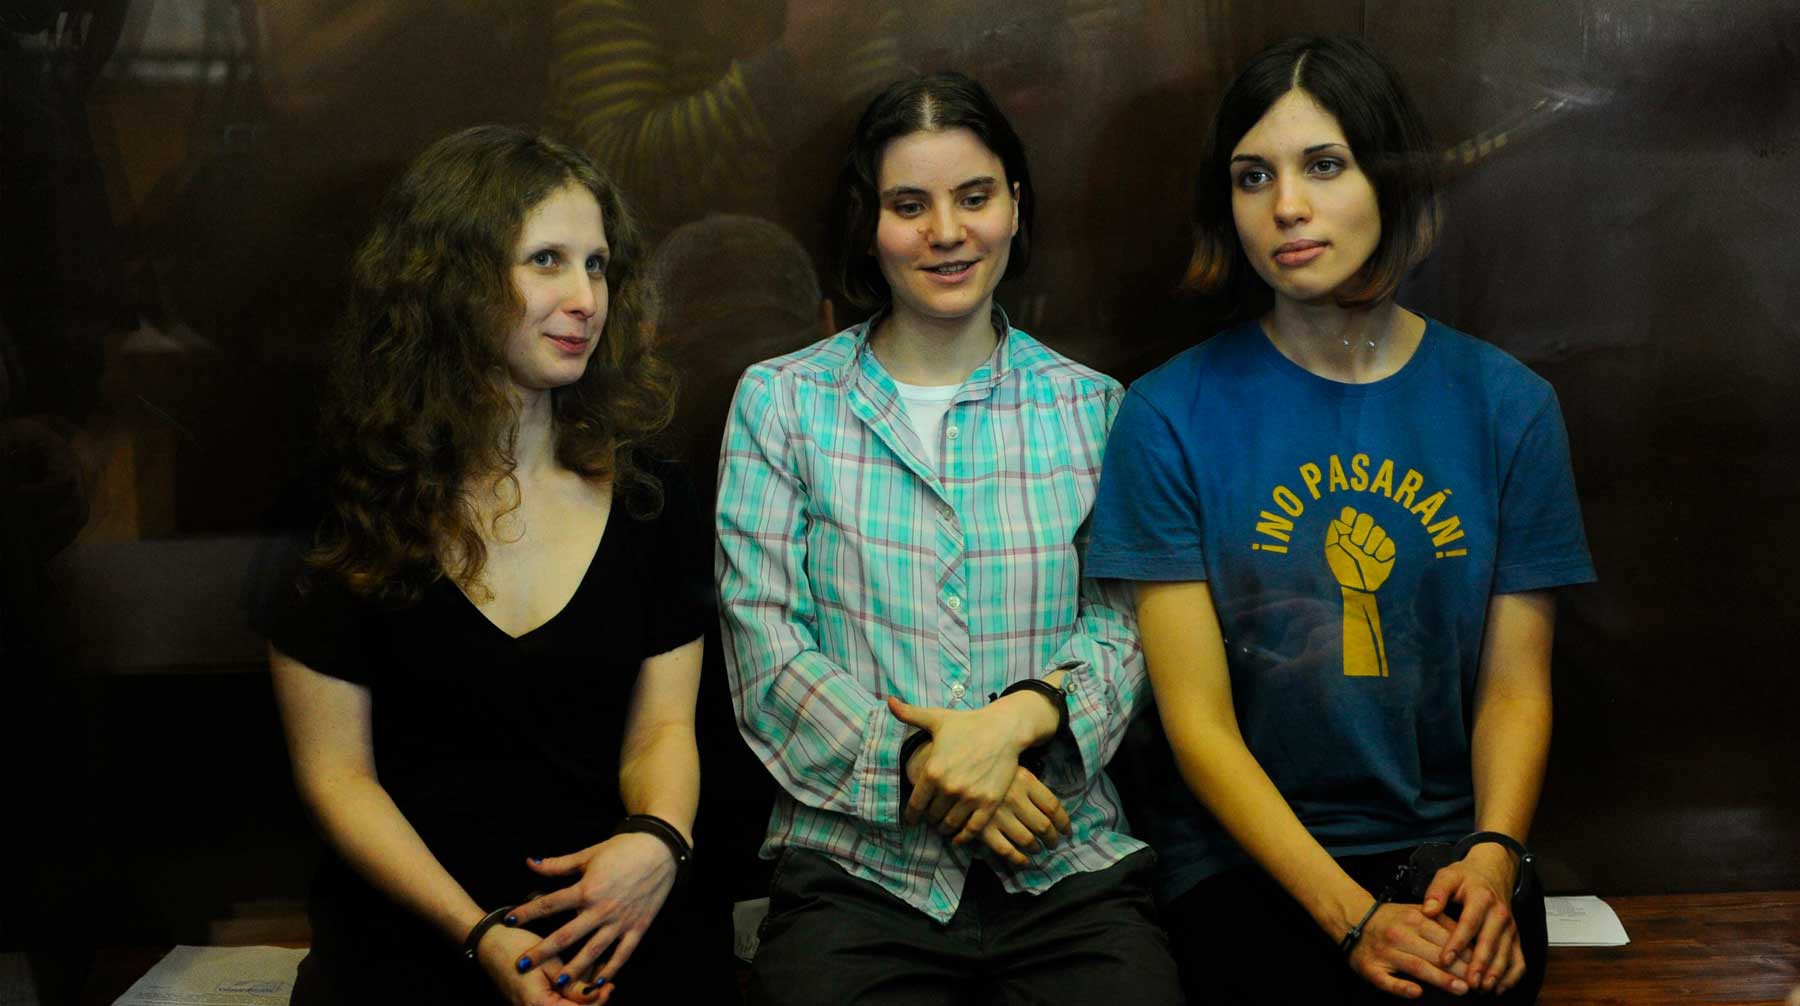 Участницы группы Pussy Riot Мария Алехина (слева), Екатерина Самуцевич (посередине) и Надежда Толоконникова (справа) во время заседания Мосгорсуда, август 2012 года